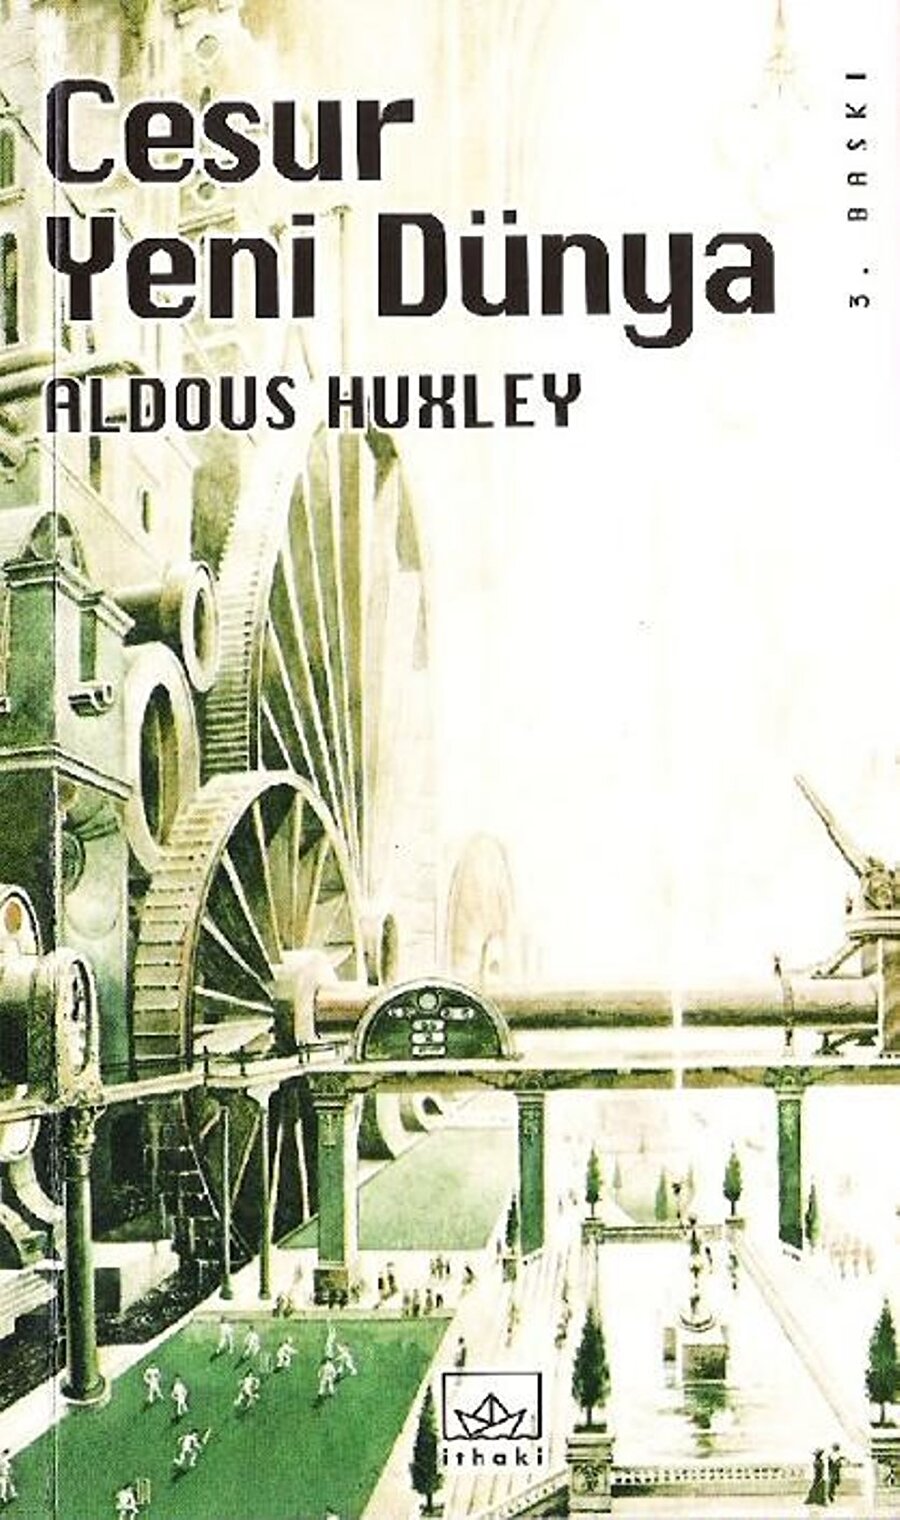 Cesur Yeni Dünya- Aldous Huxley
26. yüzyılın Londra’sında geçen hikayede savaş ve yoksulluğun yok edildiği, teknolojinin ilerleyişi sonucu neler olabileceği anlatılıyor. Her ne kadar bunlar güzel olsa da aile, sanat, kültürel çeşitlilik gibi bitip giden değerlerden de bahsediyor.